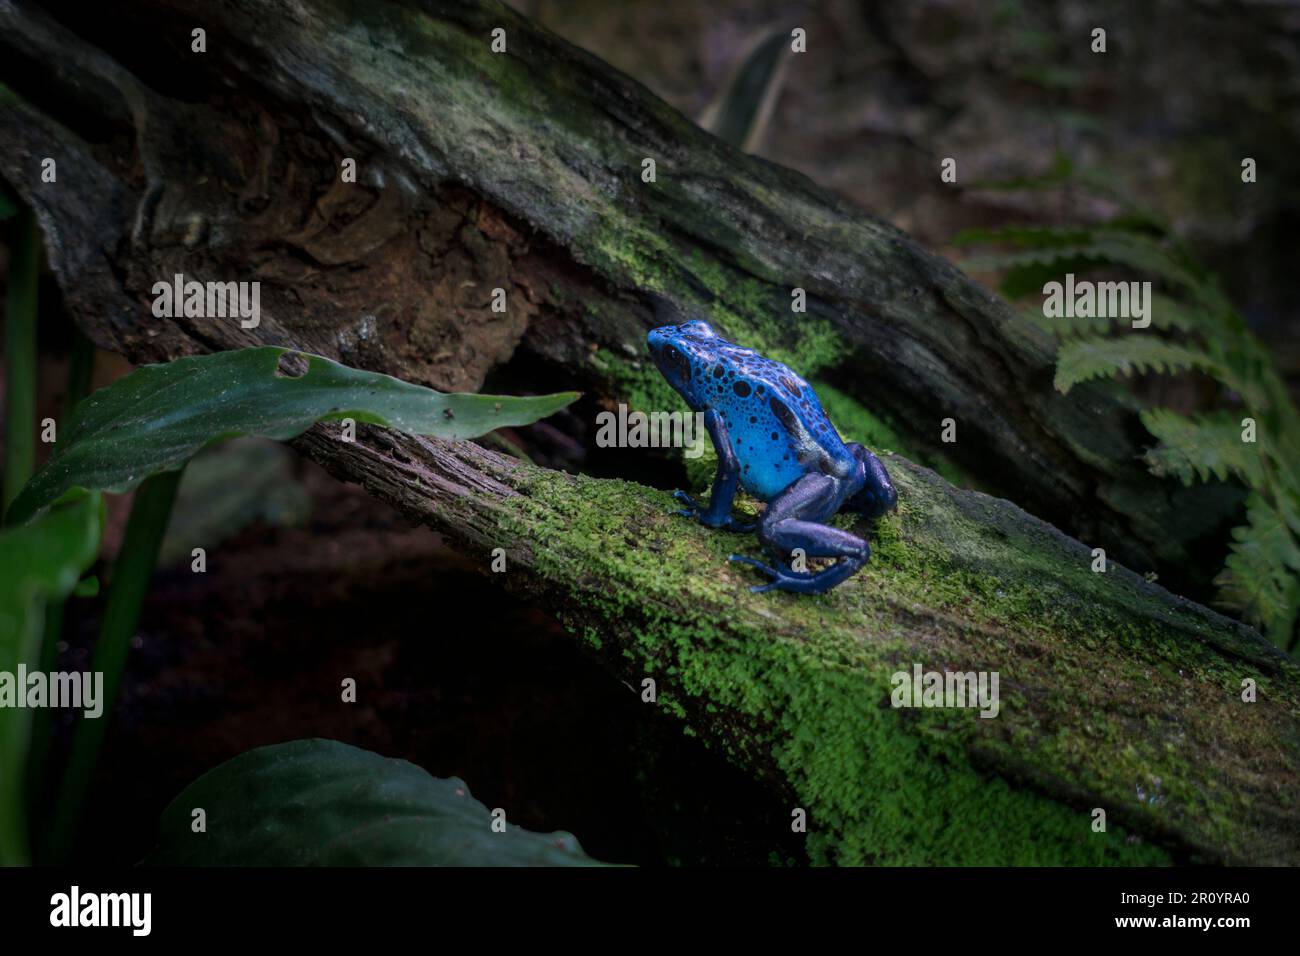 Grenouille de dart de poison bleu / grenouille de flèche de poison bleu (Dendrobates tinctorius azurus) originaire des forêts tropicales du sud du Suriname et du nord du Brésil Banque D'Images